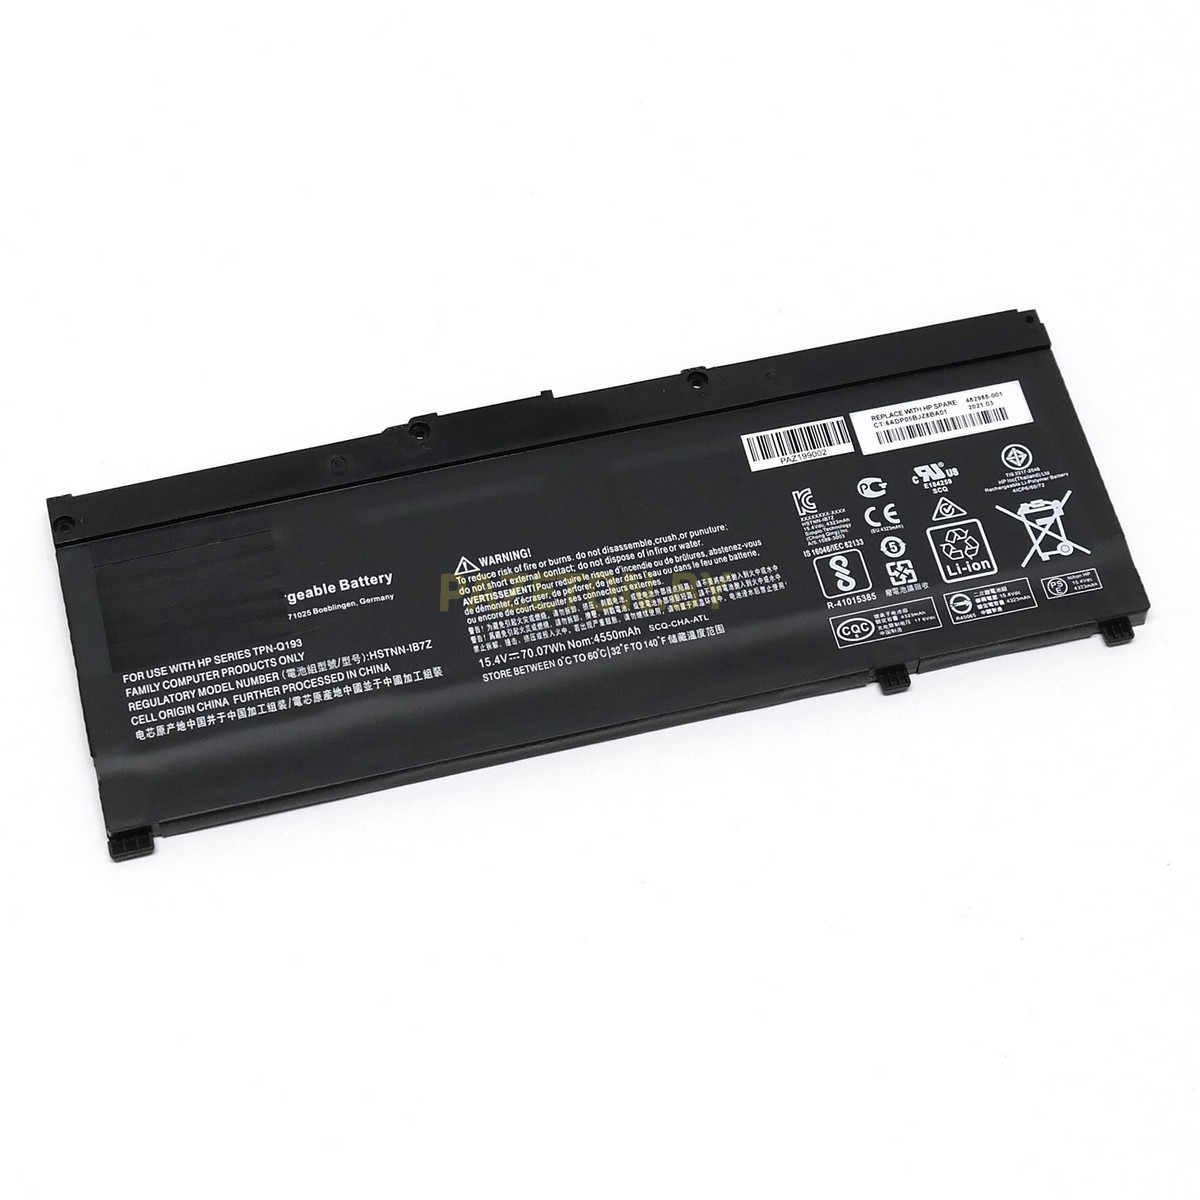 Батарея SR04 SR04XL для HP Omen 15-CE 15-CB 15-DC 15.4V 54Wh и других моделей ноутбуков, фото 1